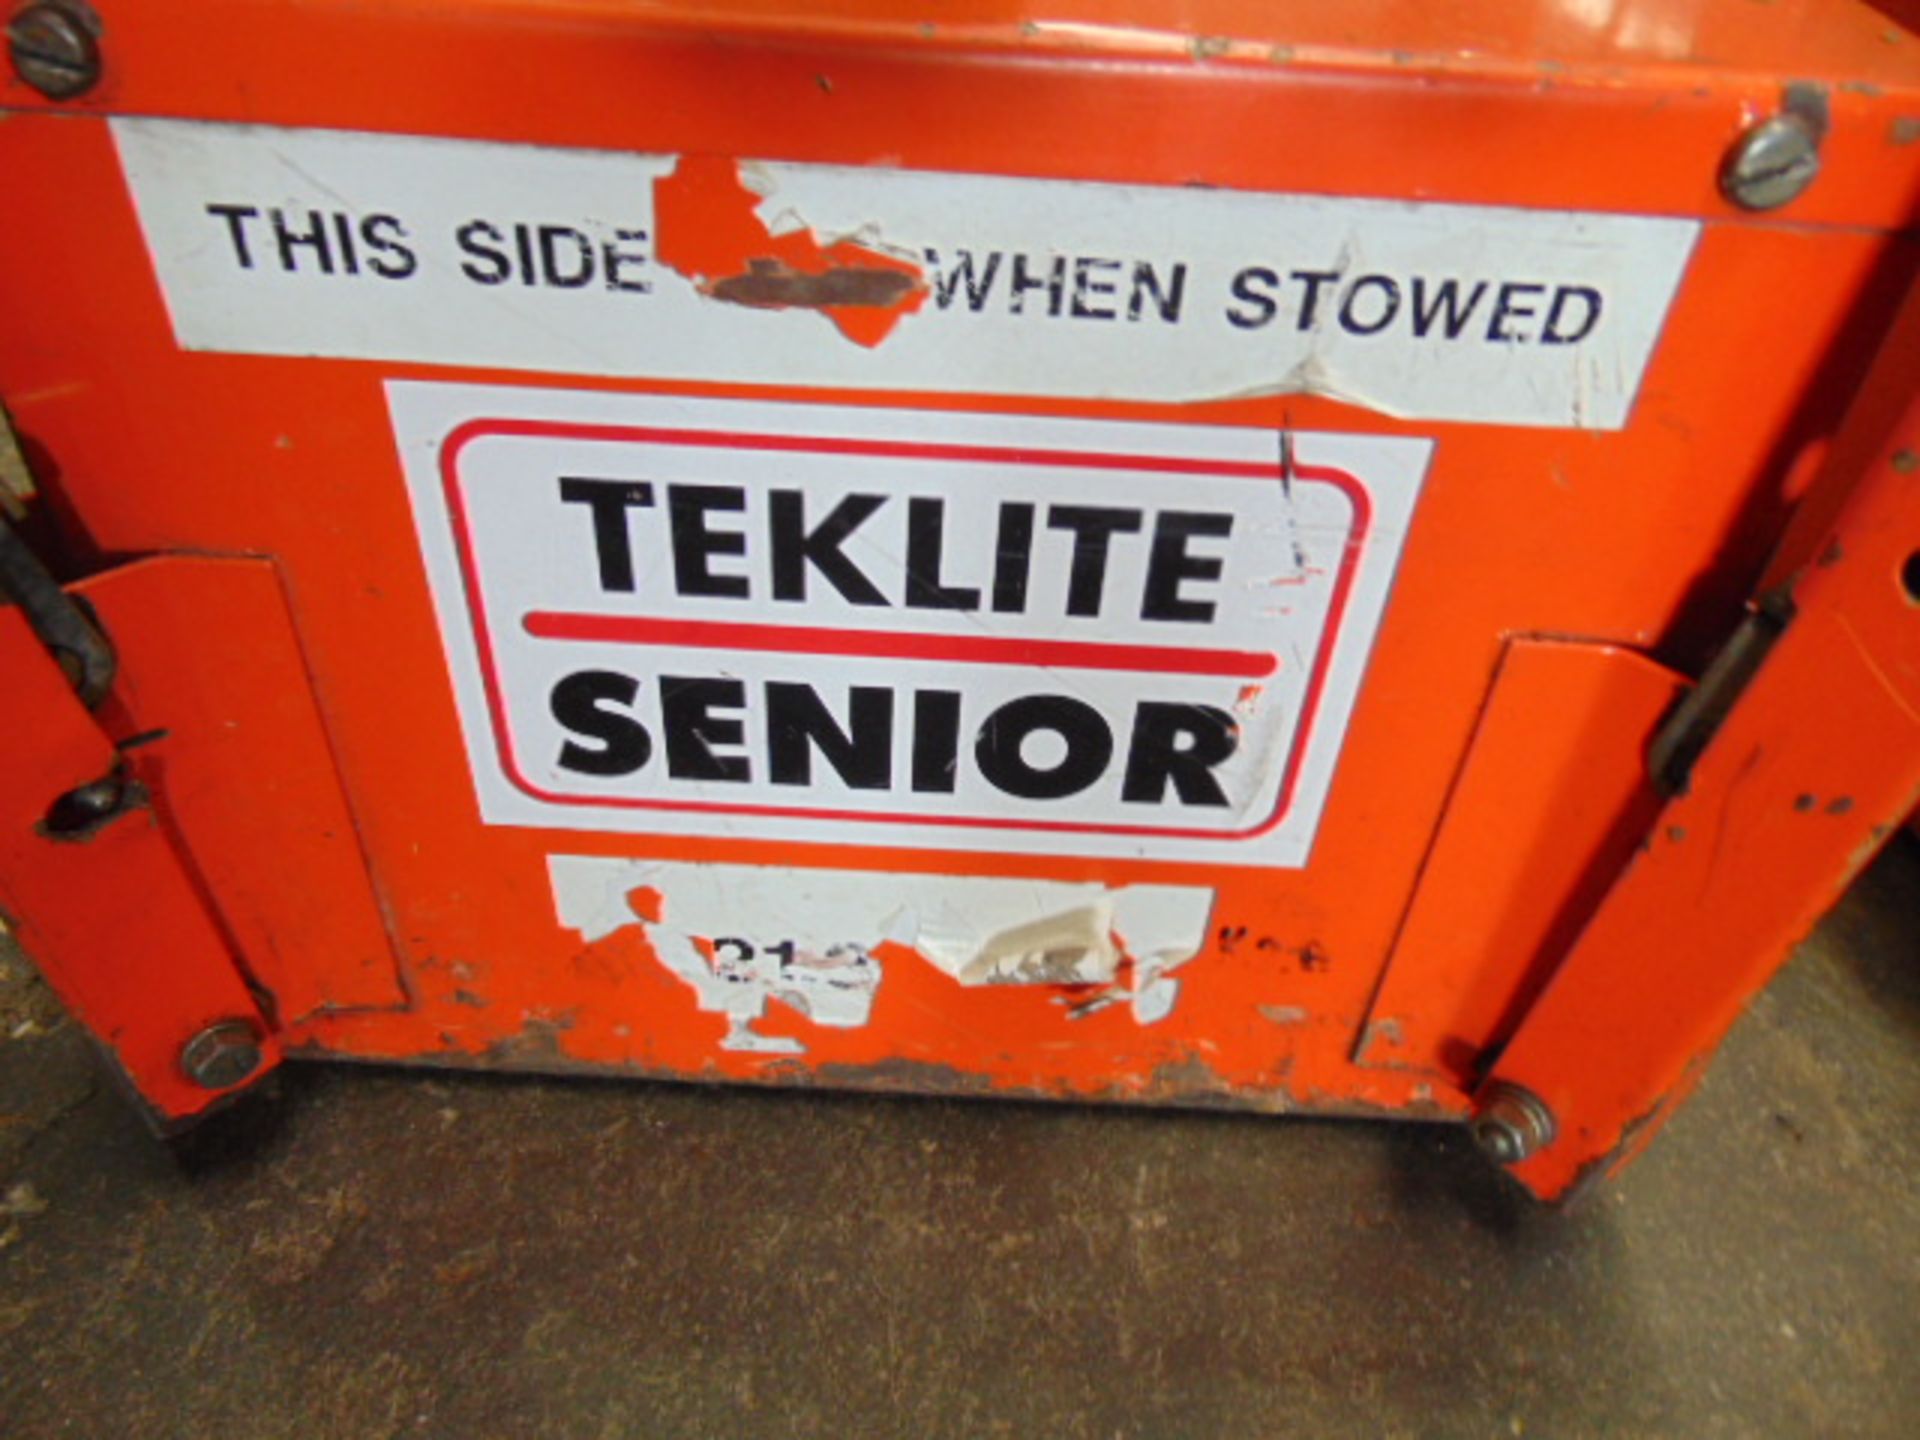 Teklite 5K-B2 Portable Worklight with 1 xTeklite Senior Battery - Image 3 of 4